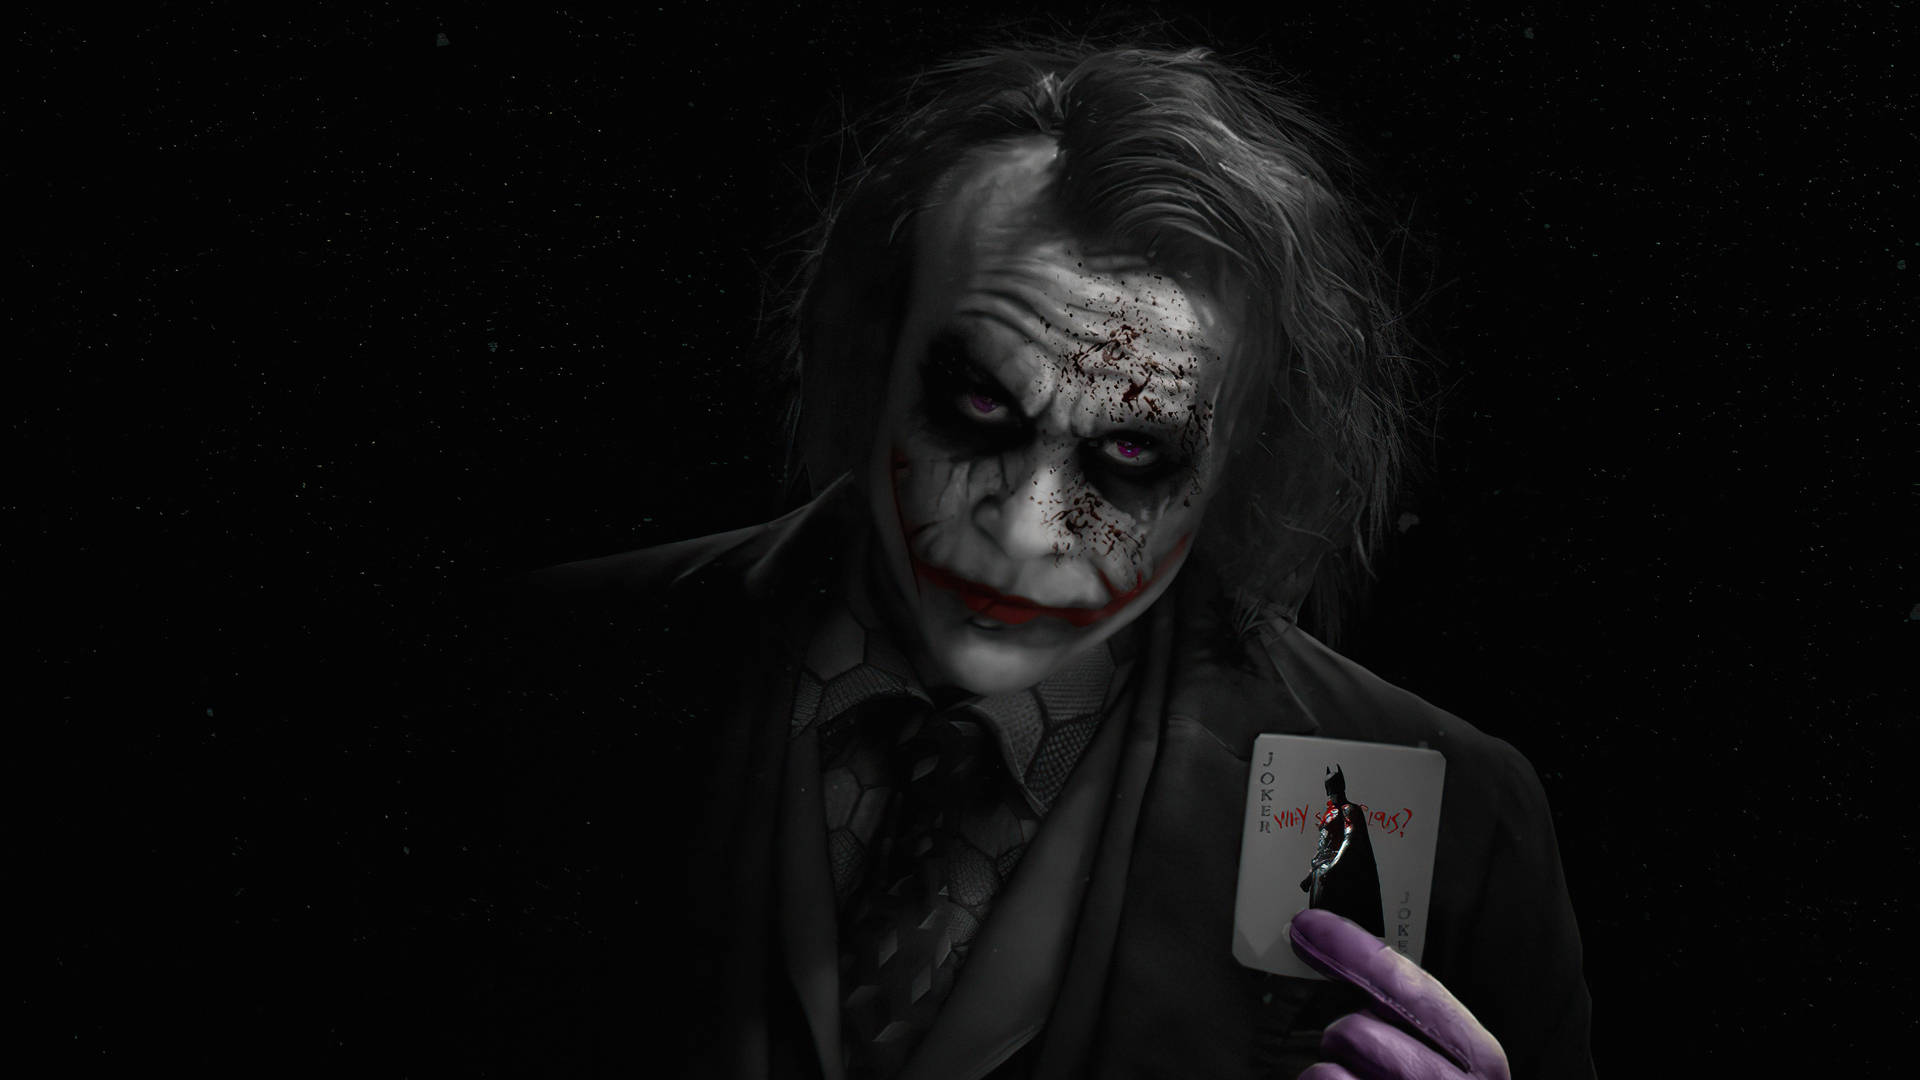 Heath Ledger In Black Ultra Hd Joker Costume